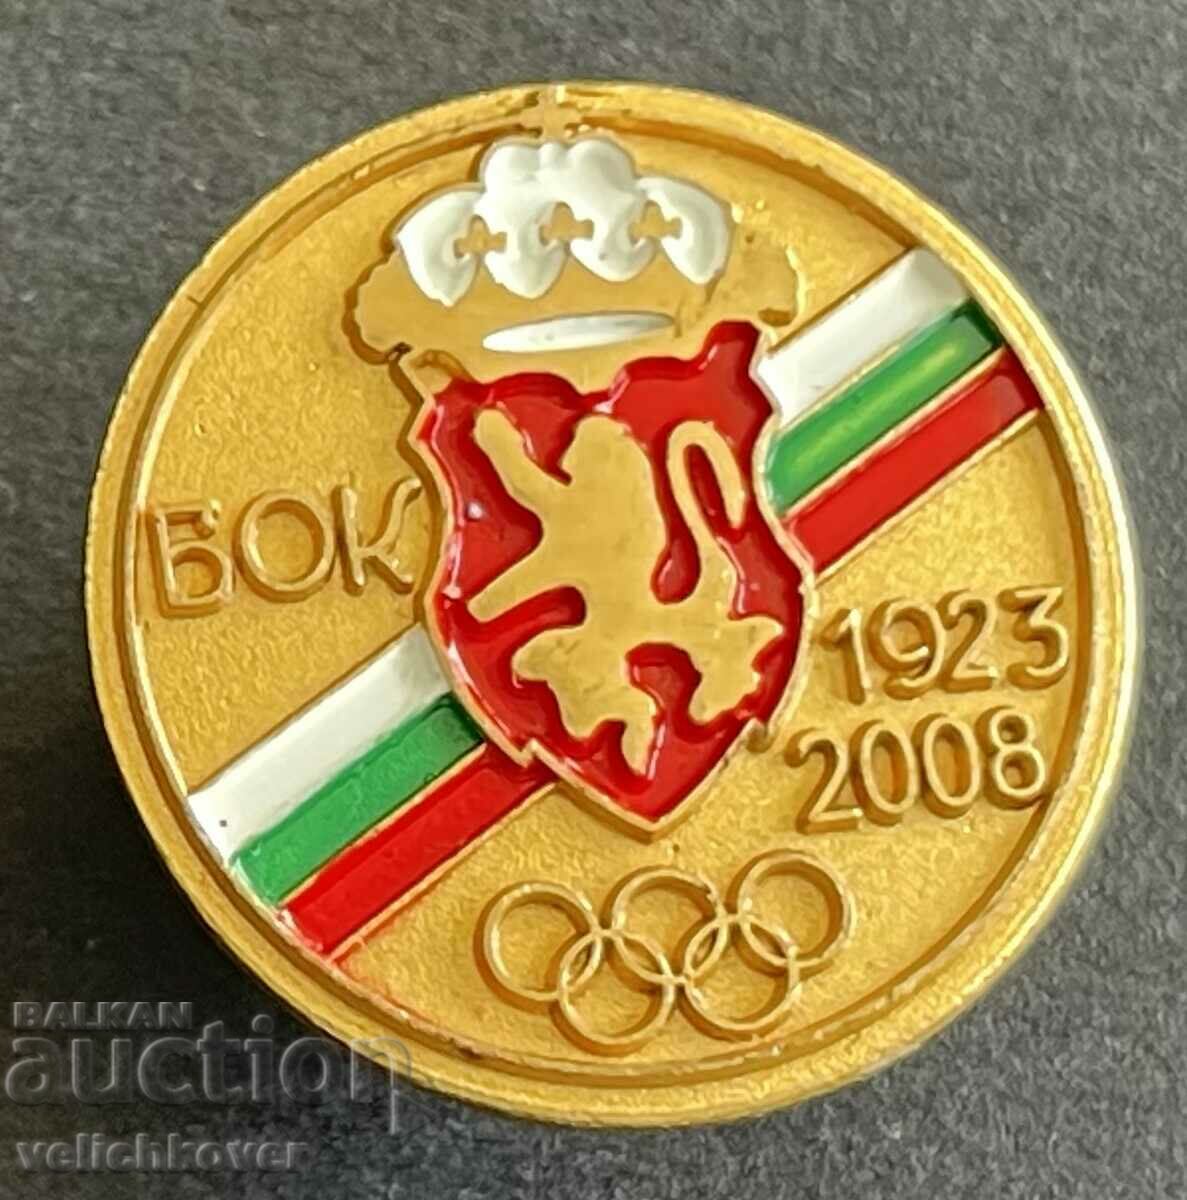 35457 Βουλγαρία υπογραφή 85 BOK Βουλγαρική Ολυμπιακή Επιτροπή 2008